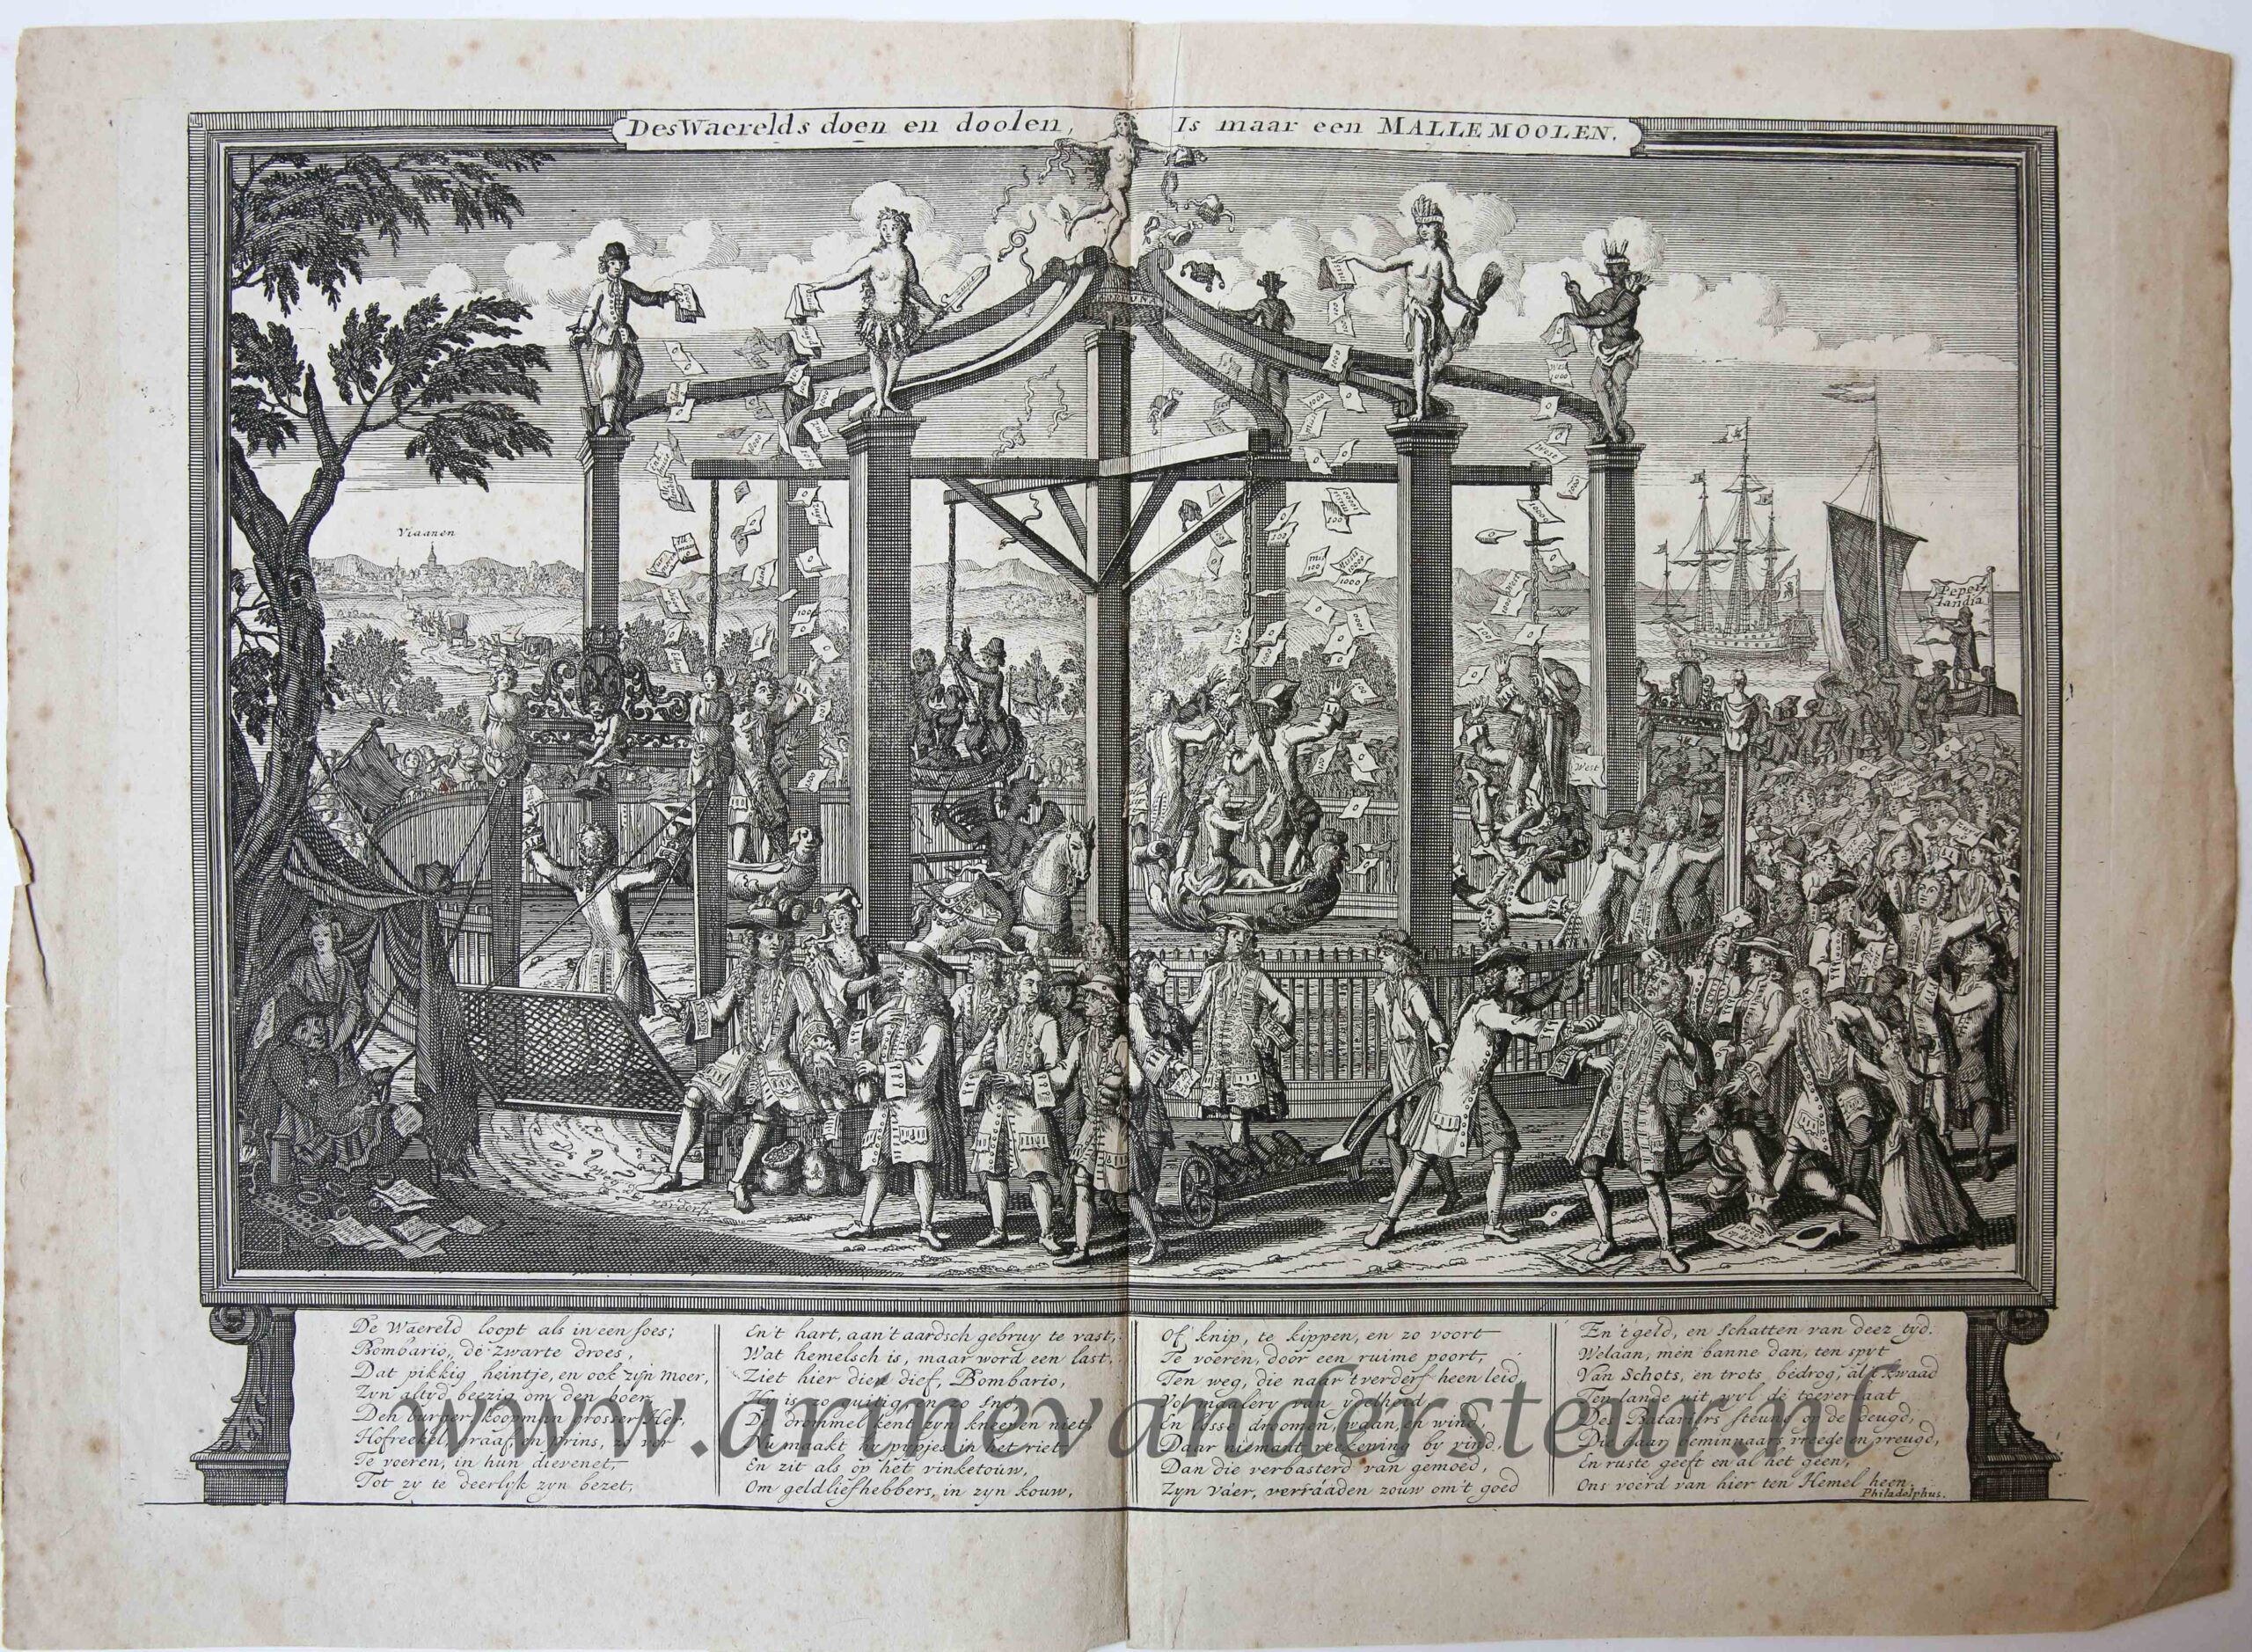 [Antique etching, ets] Anonymous, "Des Waerelds doen en doolen, is maar een MALLEMOOLEN.", published 1721.